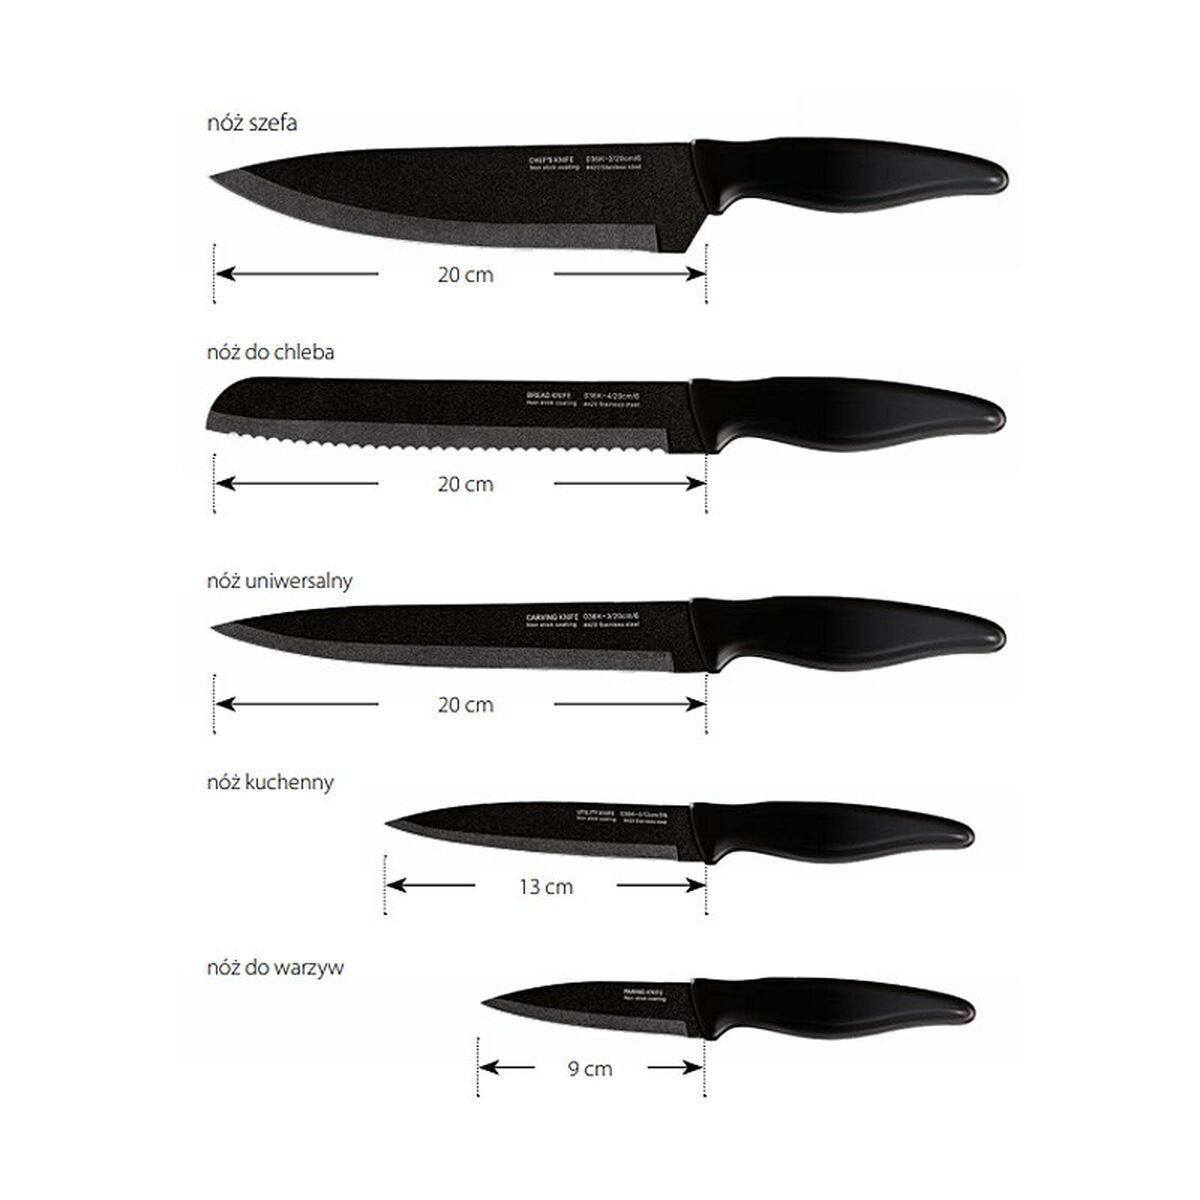 Knife set all black